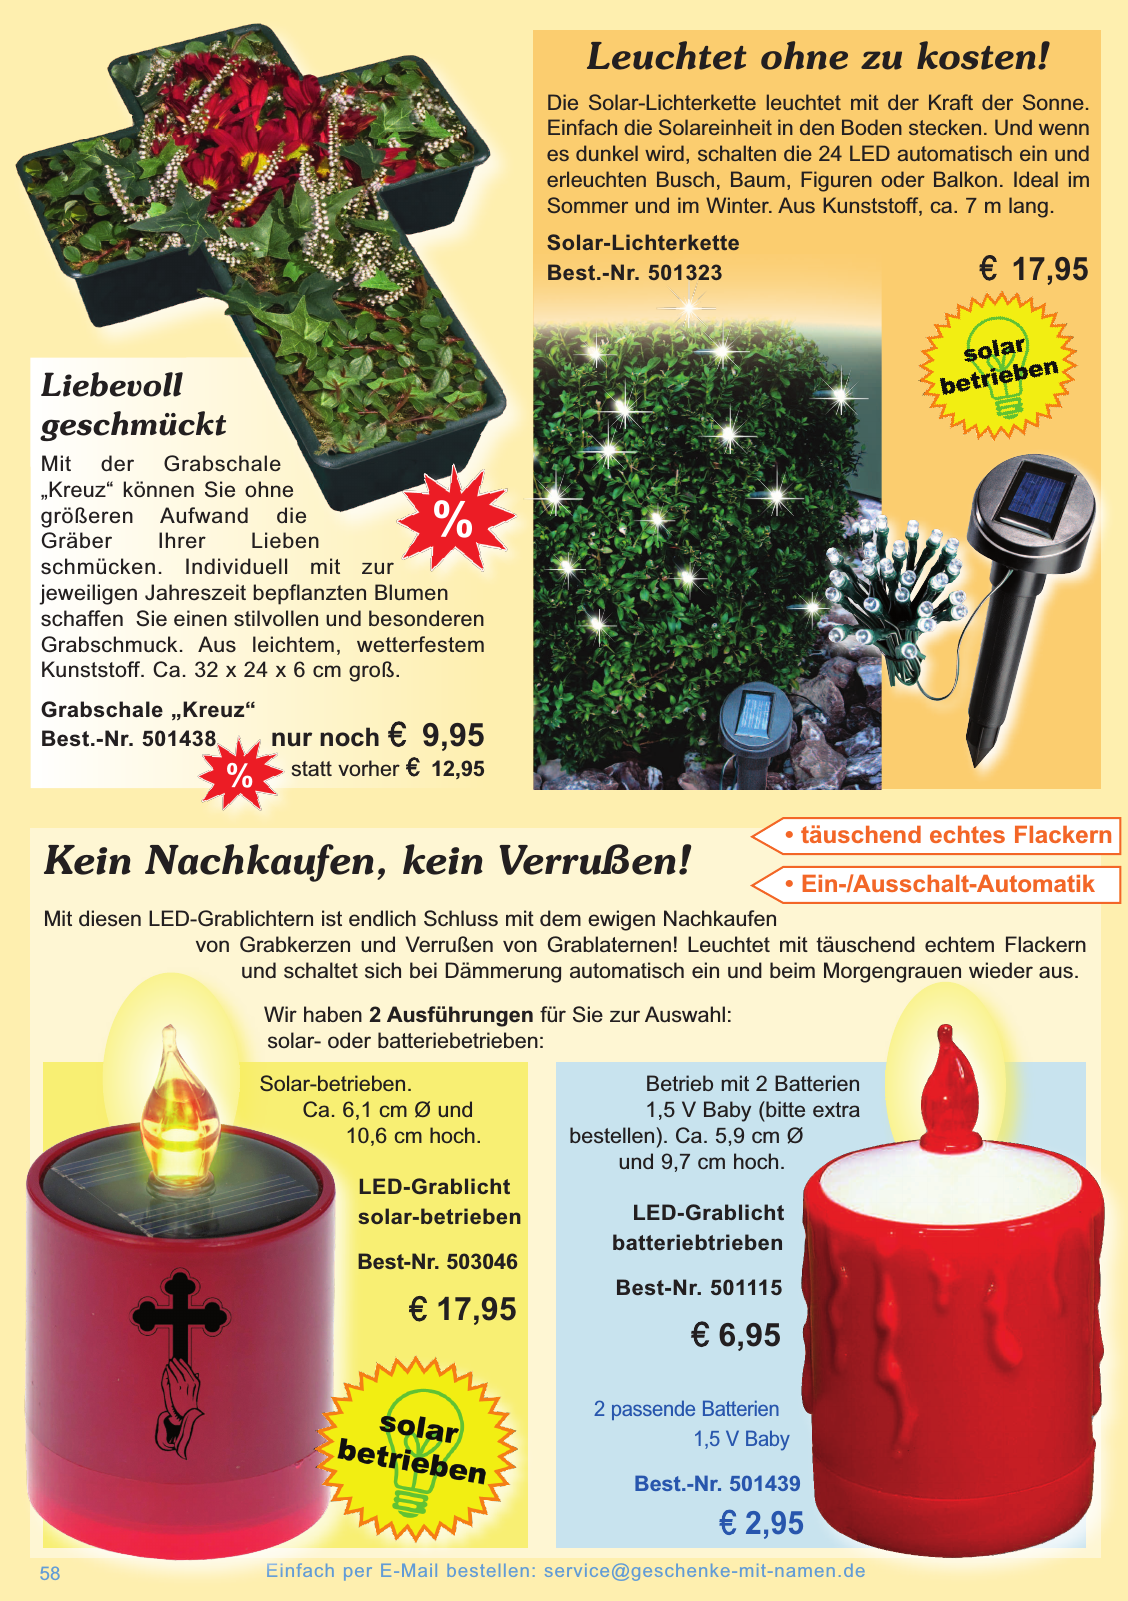 Vorschau Geschenke mit Namen Katalog 2014 / 2015 Seite 58